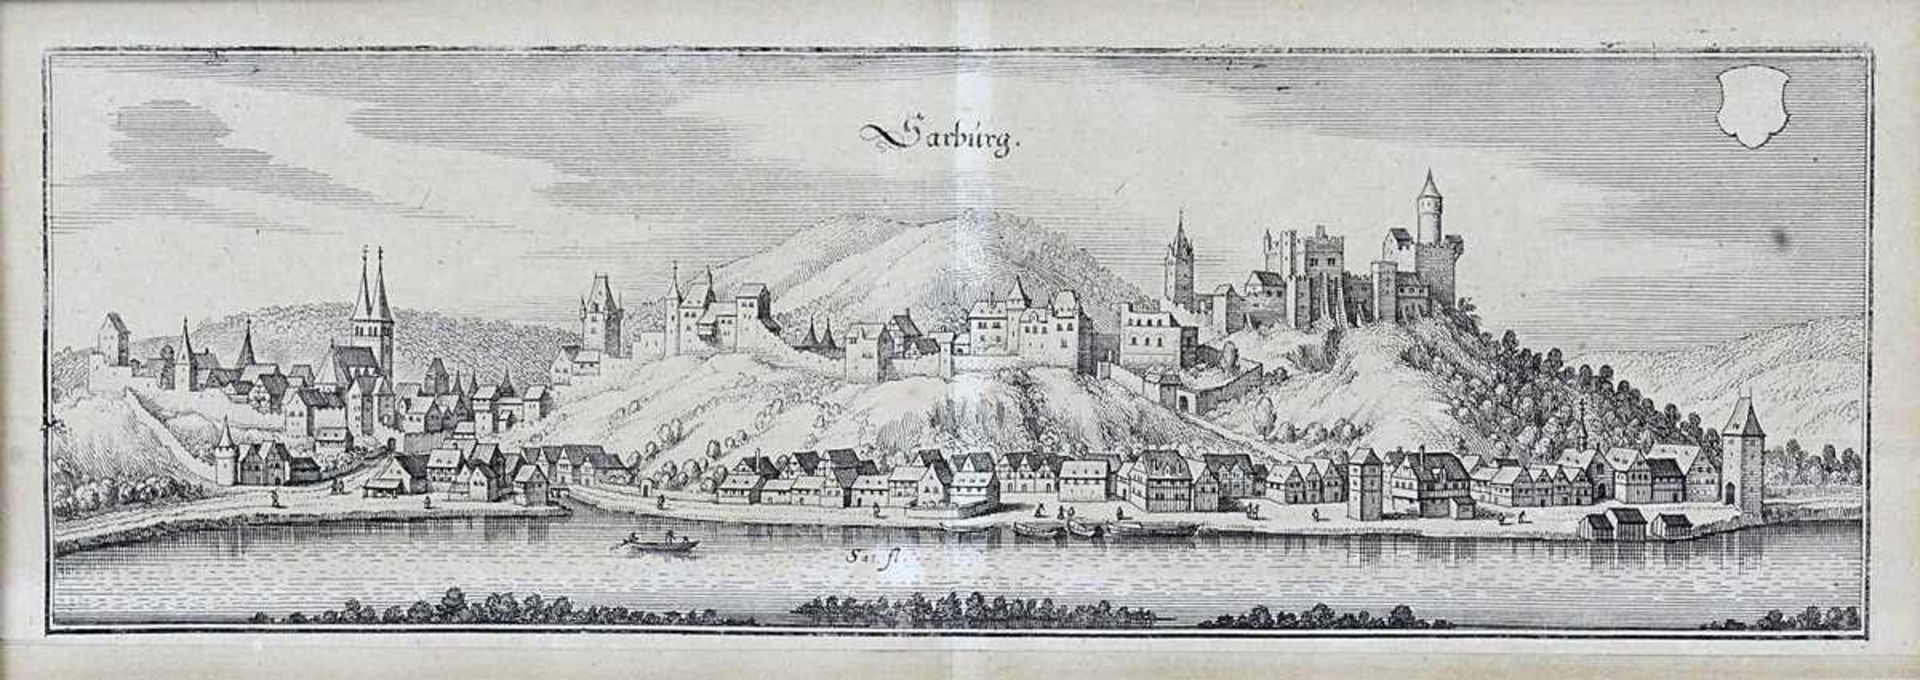 Saarburg, Blick über die Saar auf Burg und Stadt mit der Laurentiuskirche, Kupferstich von M. Merian